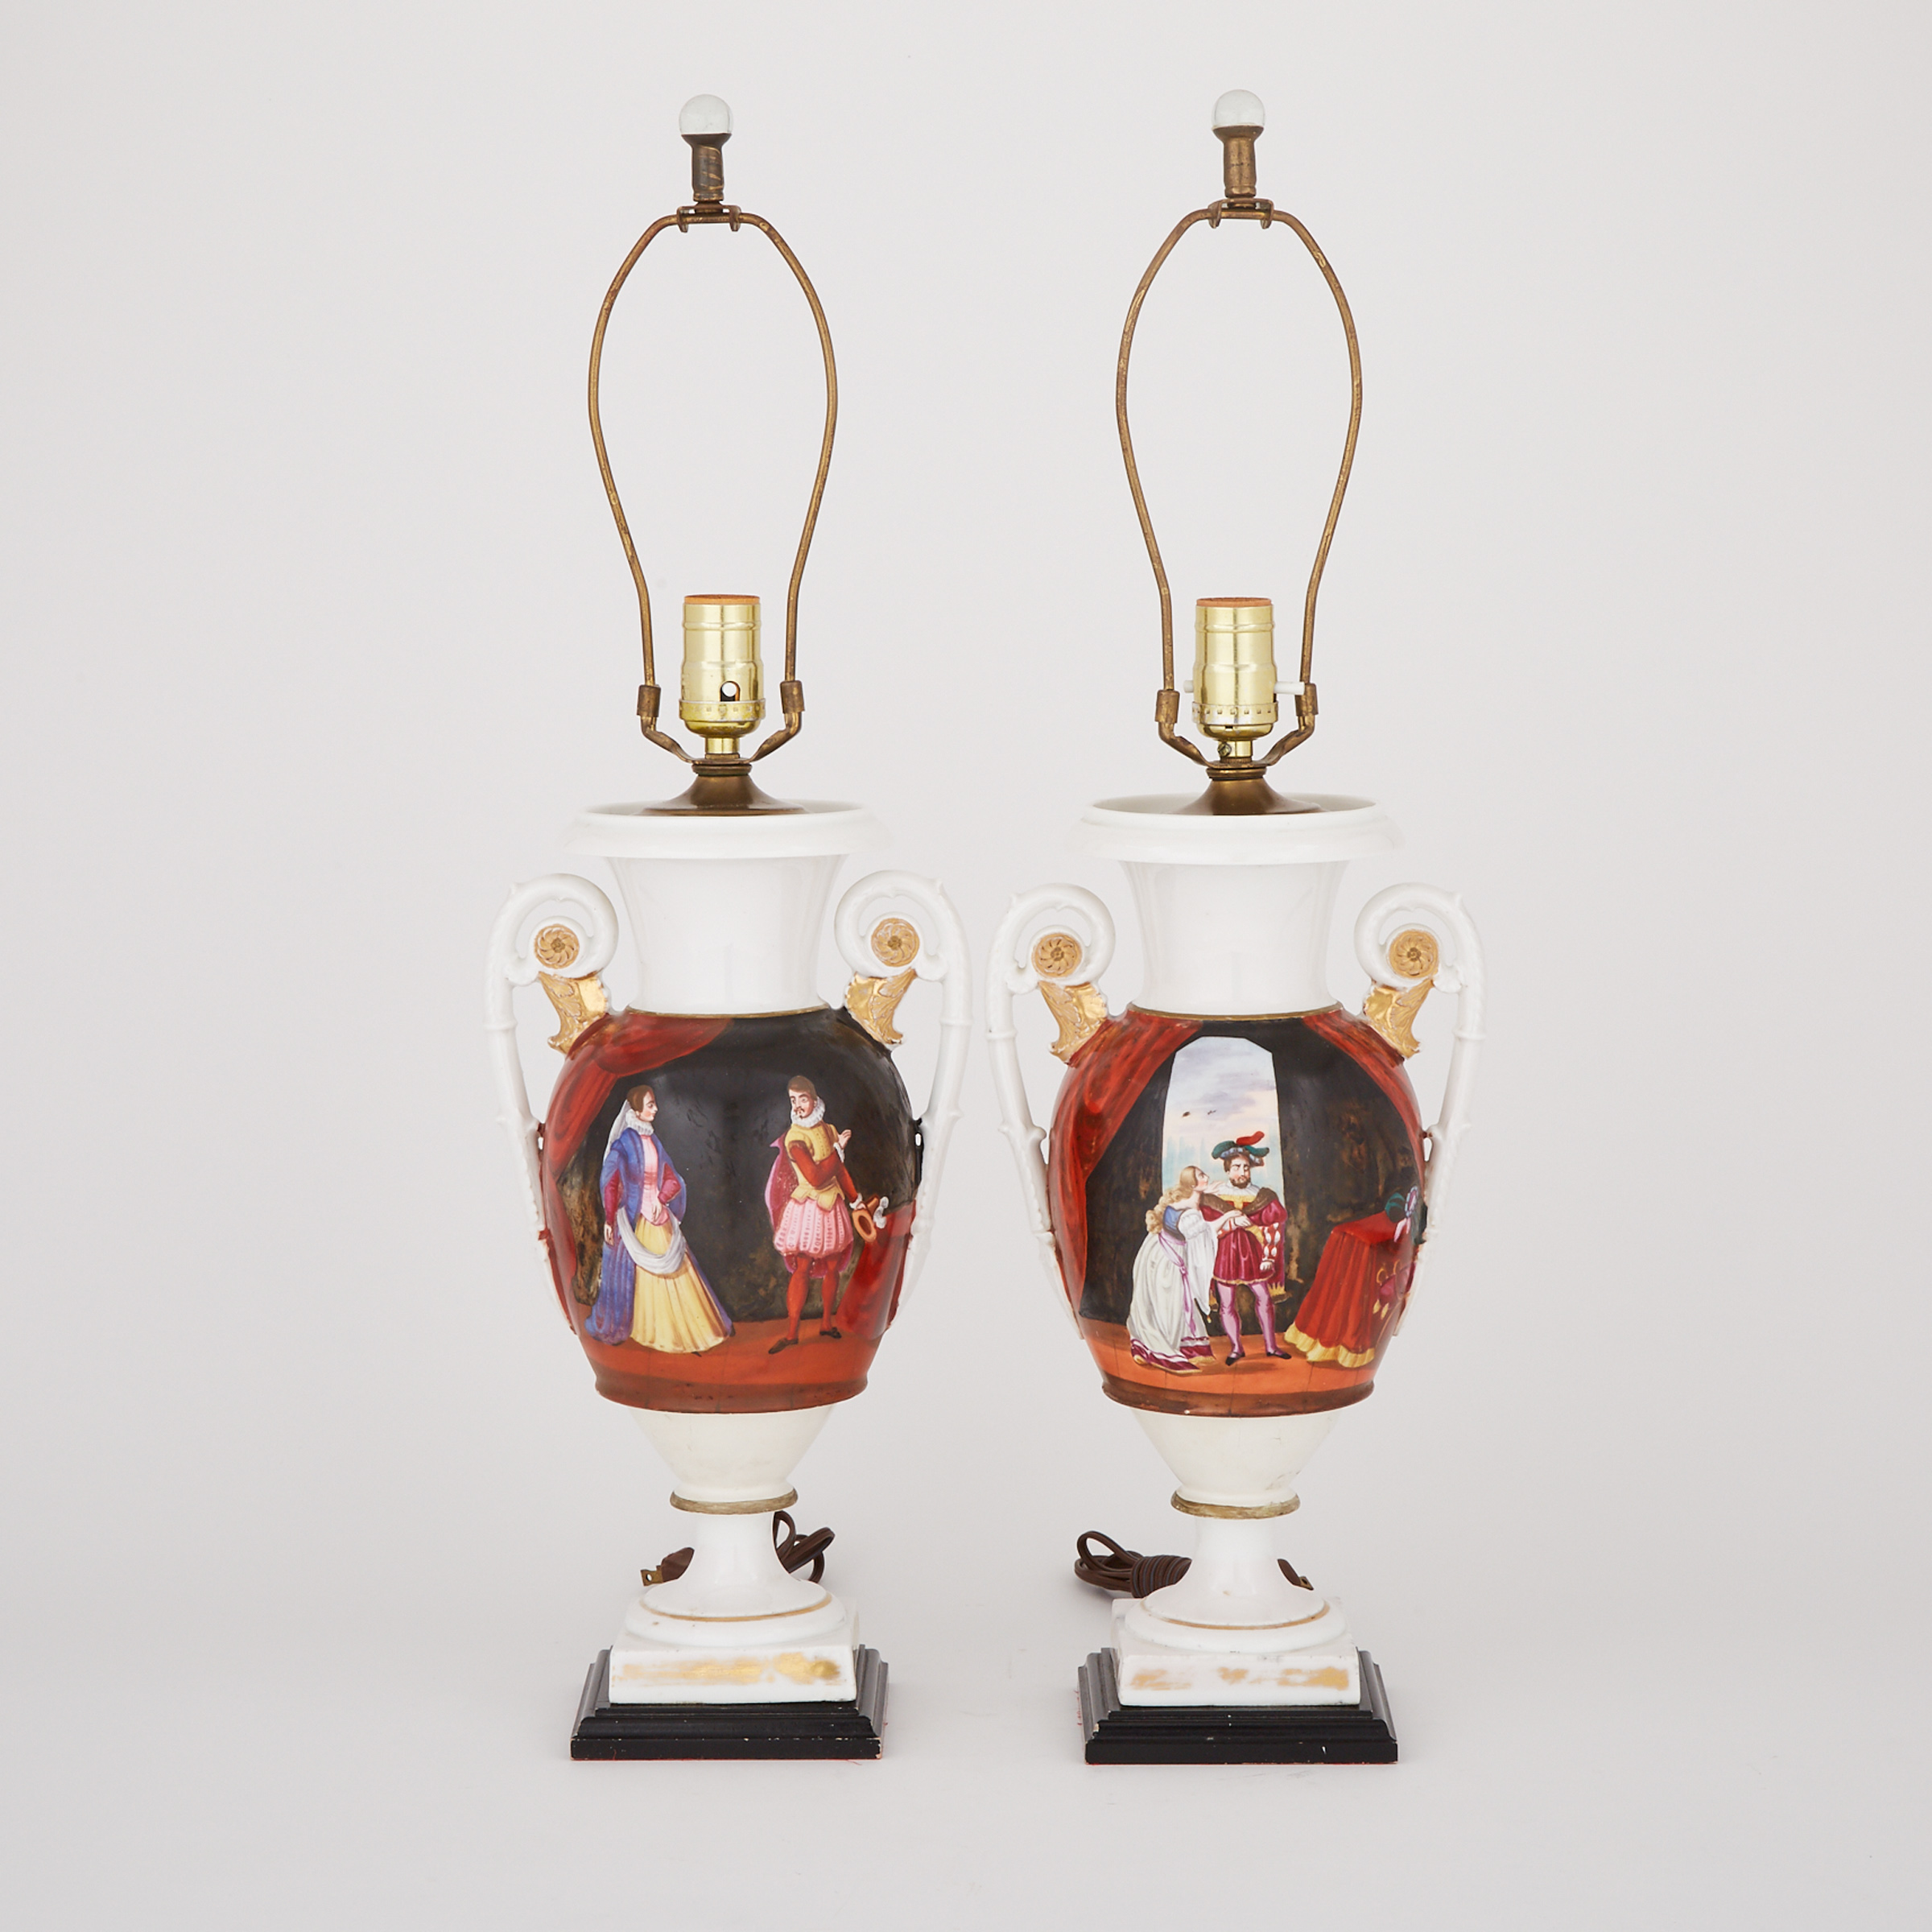 Pair of Paris Porcelain Urn Table Lamps, 19th century